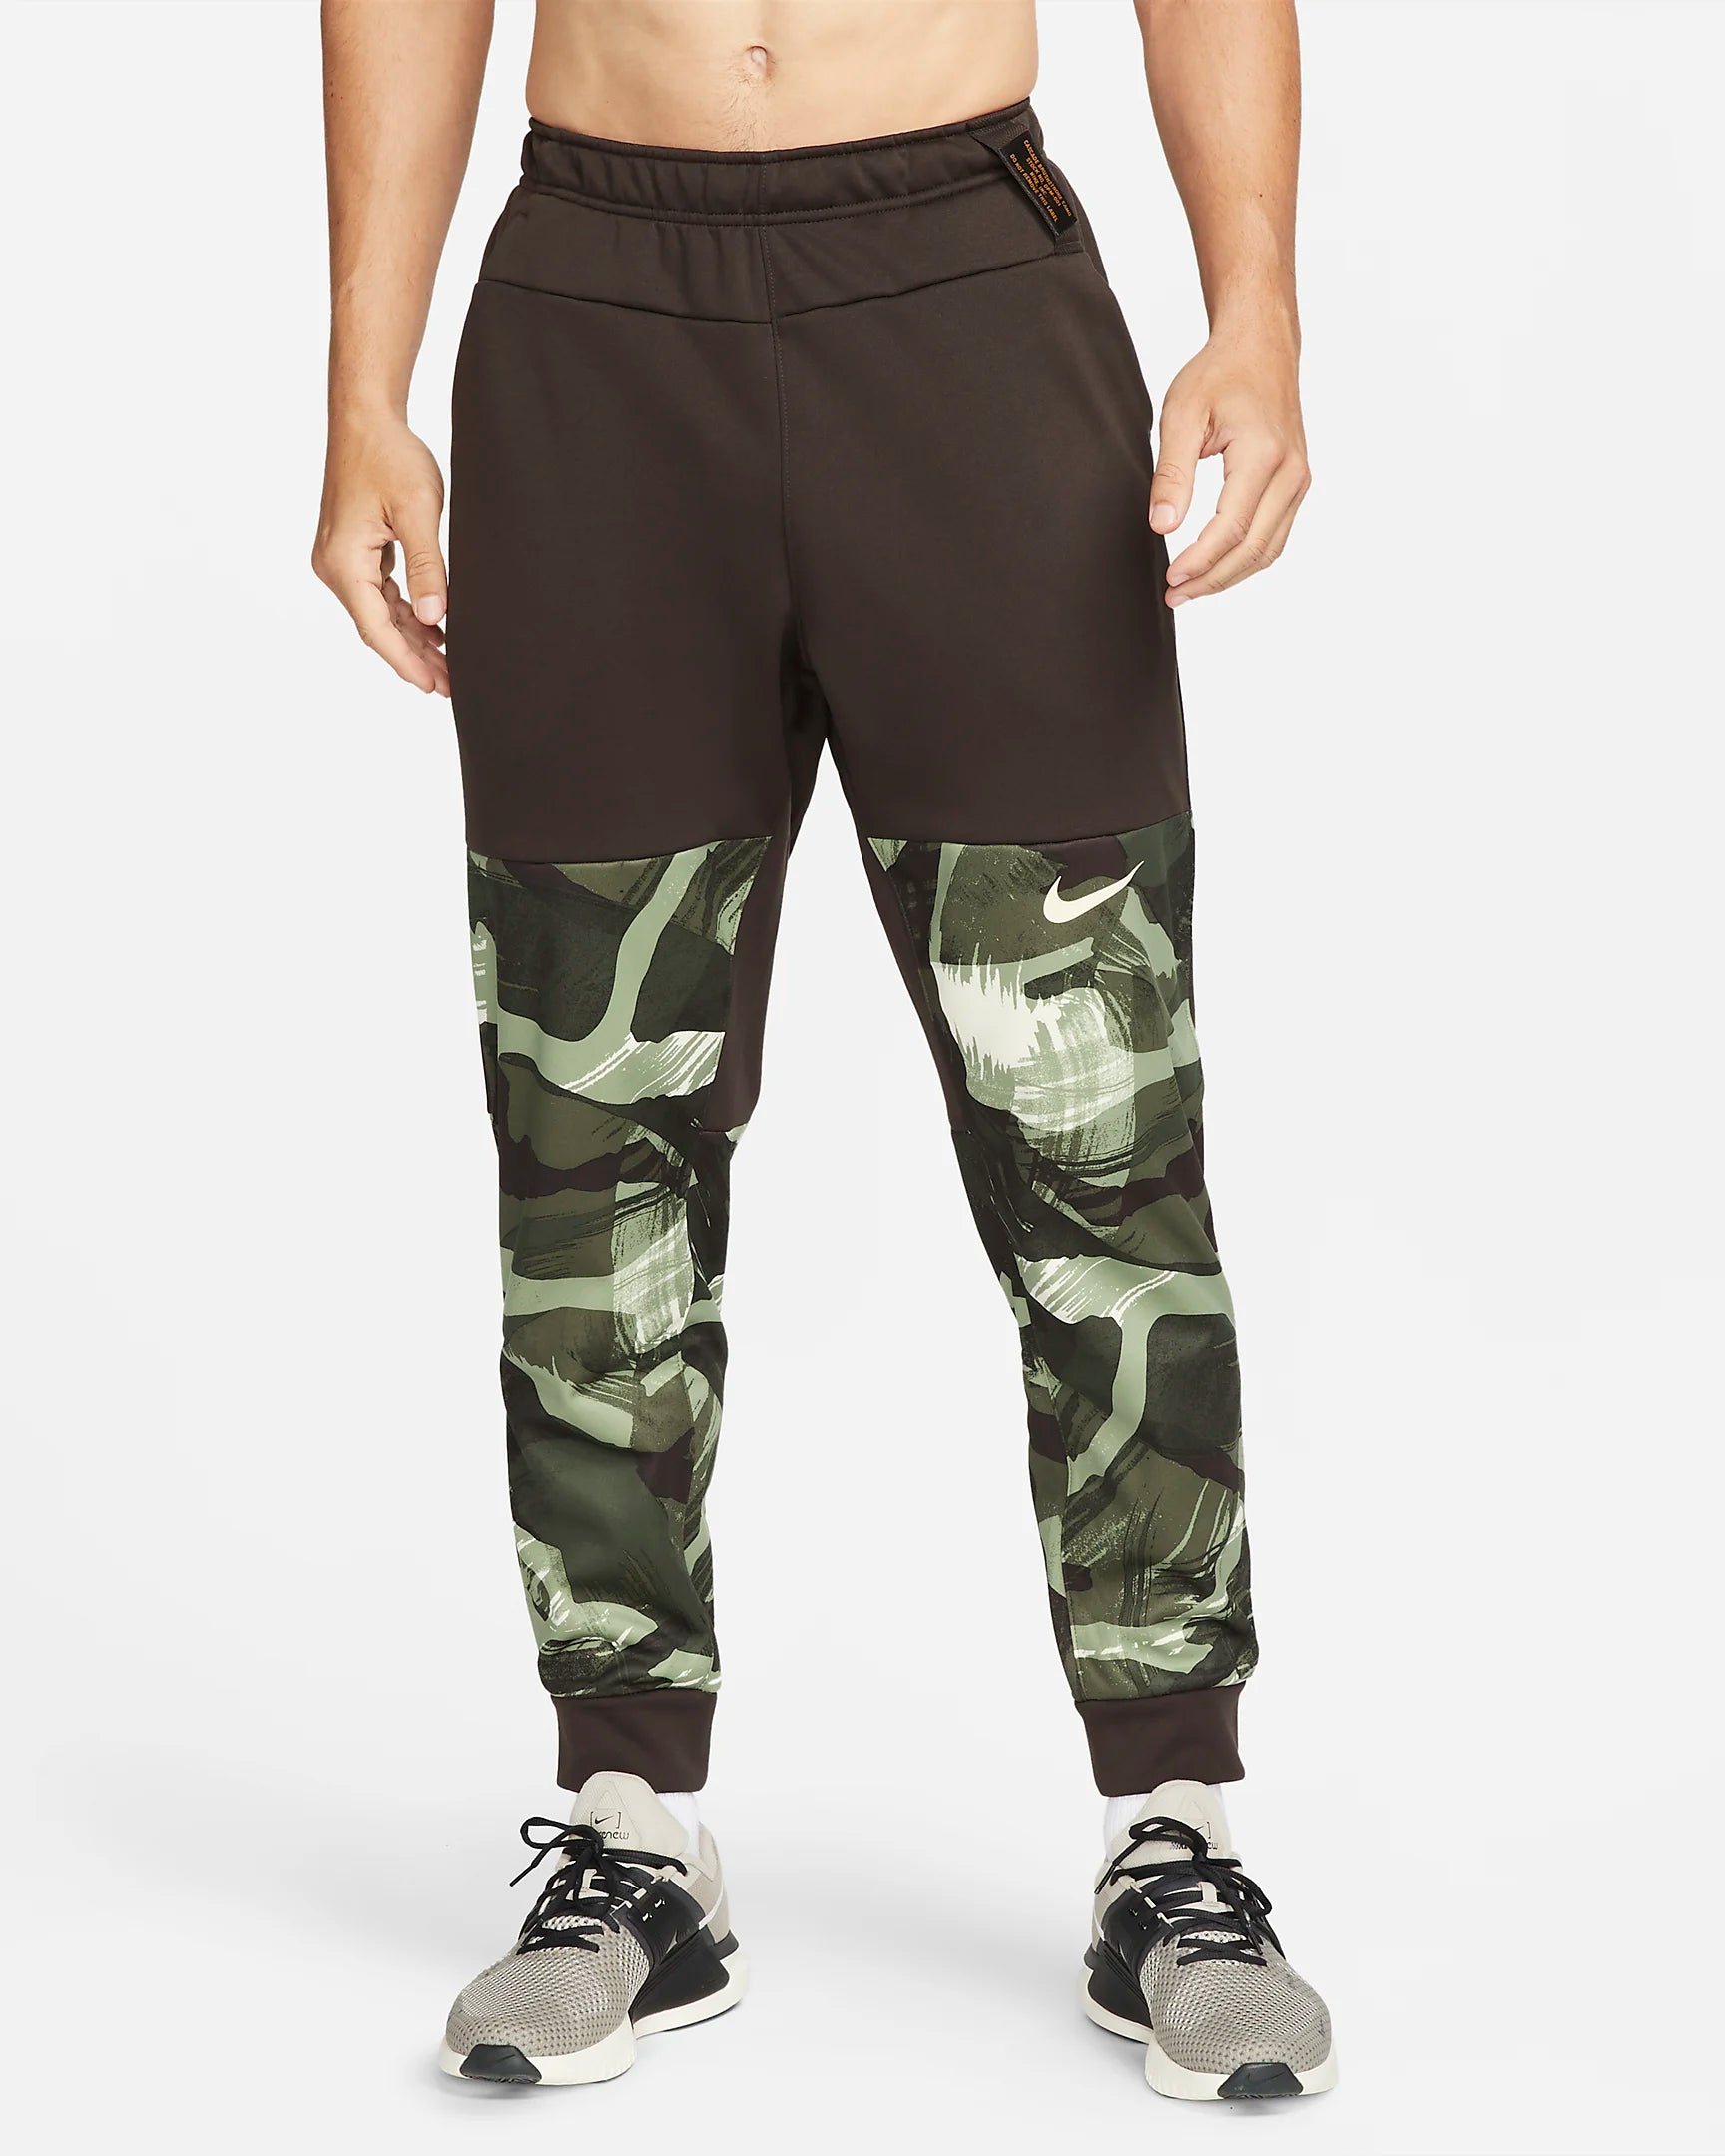 Nike Therma Fit Pants - Brown/Khaki